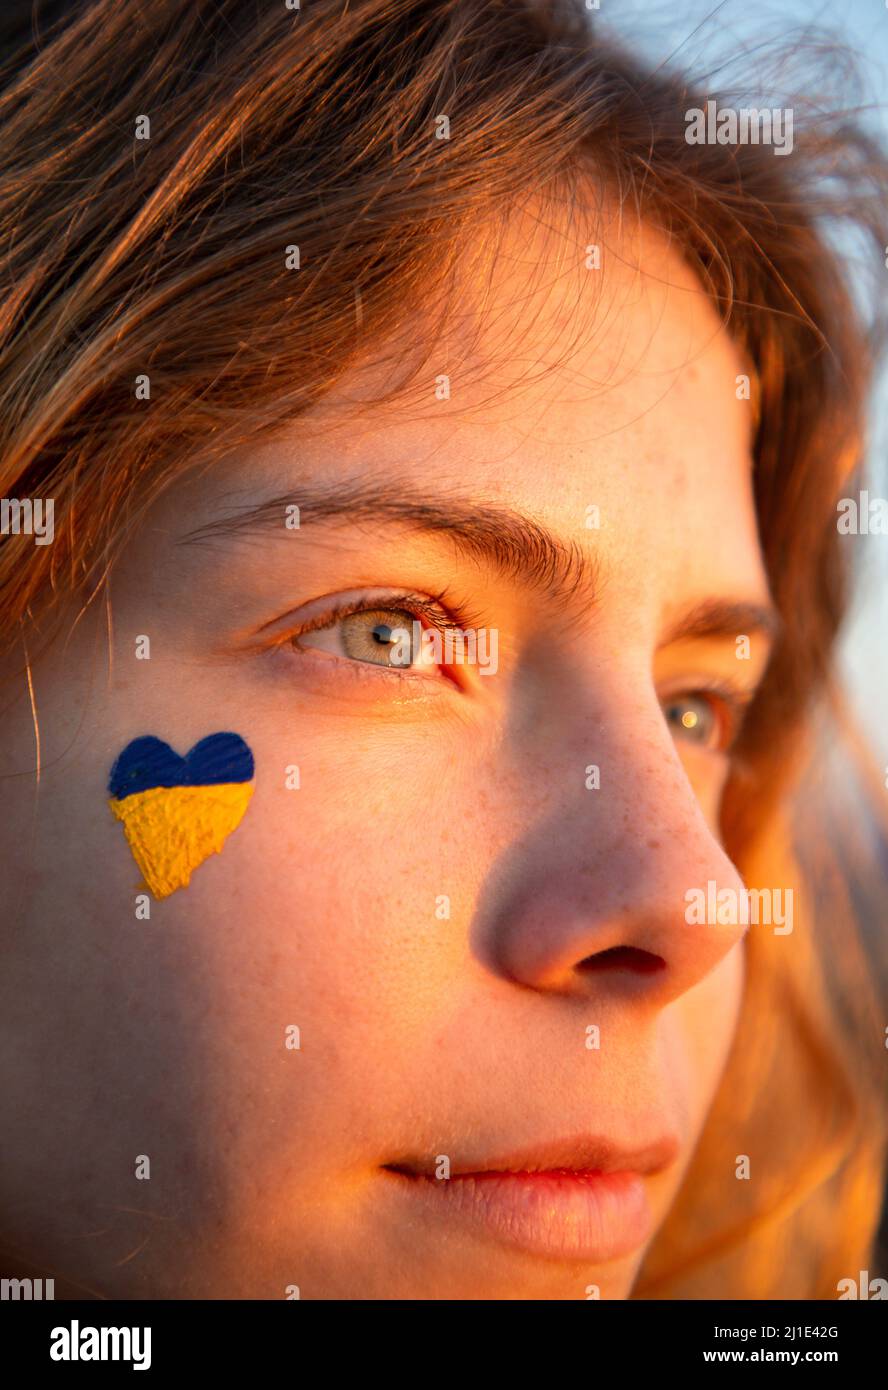 Nahaufnahme eines weiblichen Gesichts mit einem gelb-blauen Herzen auf der Wange. Sonnenlicht Bei Sonnenuntergang. Schau nach vorne. Unterstützt Die Ukraine. Vertrauen in den Sieg Stockfoto